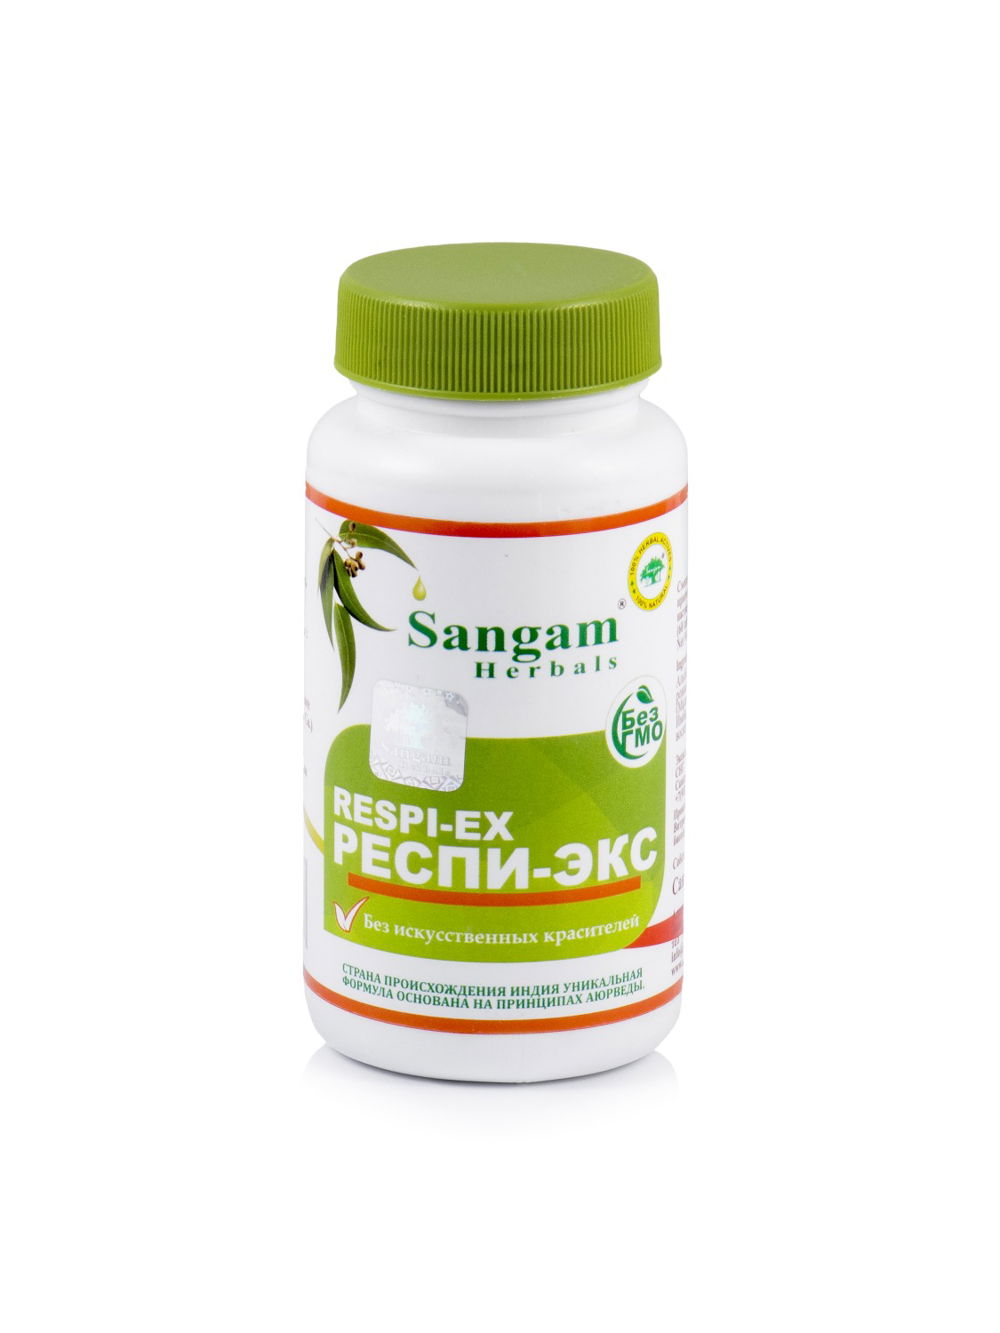 Респи-Экс Sangam Herbals (60 таблеток), Респи-Экс